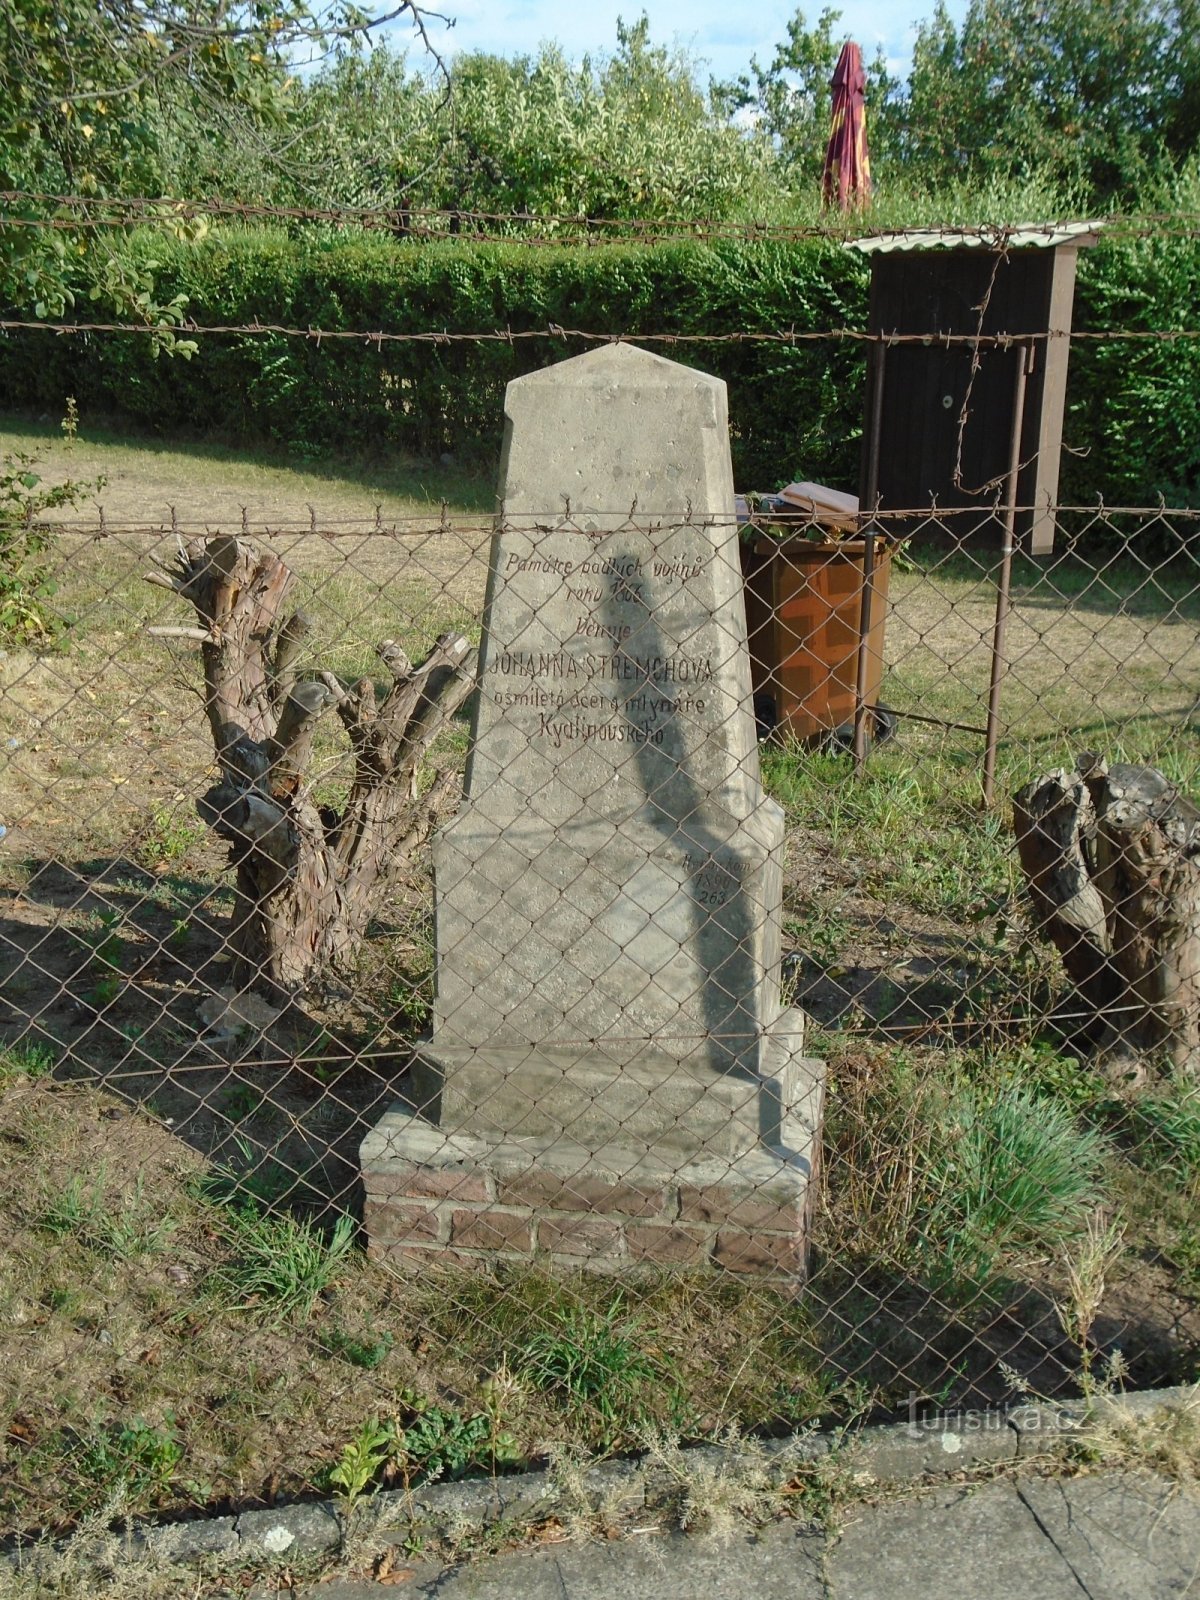 Spomenik padlim vojakom v prusko-avstrijski vojni leta 1866 v Pláckyju (Hradec Králové)